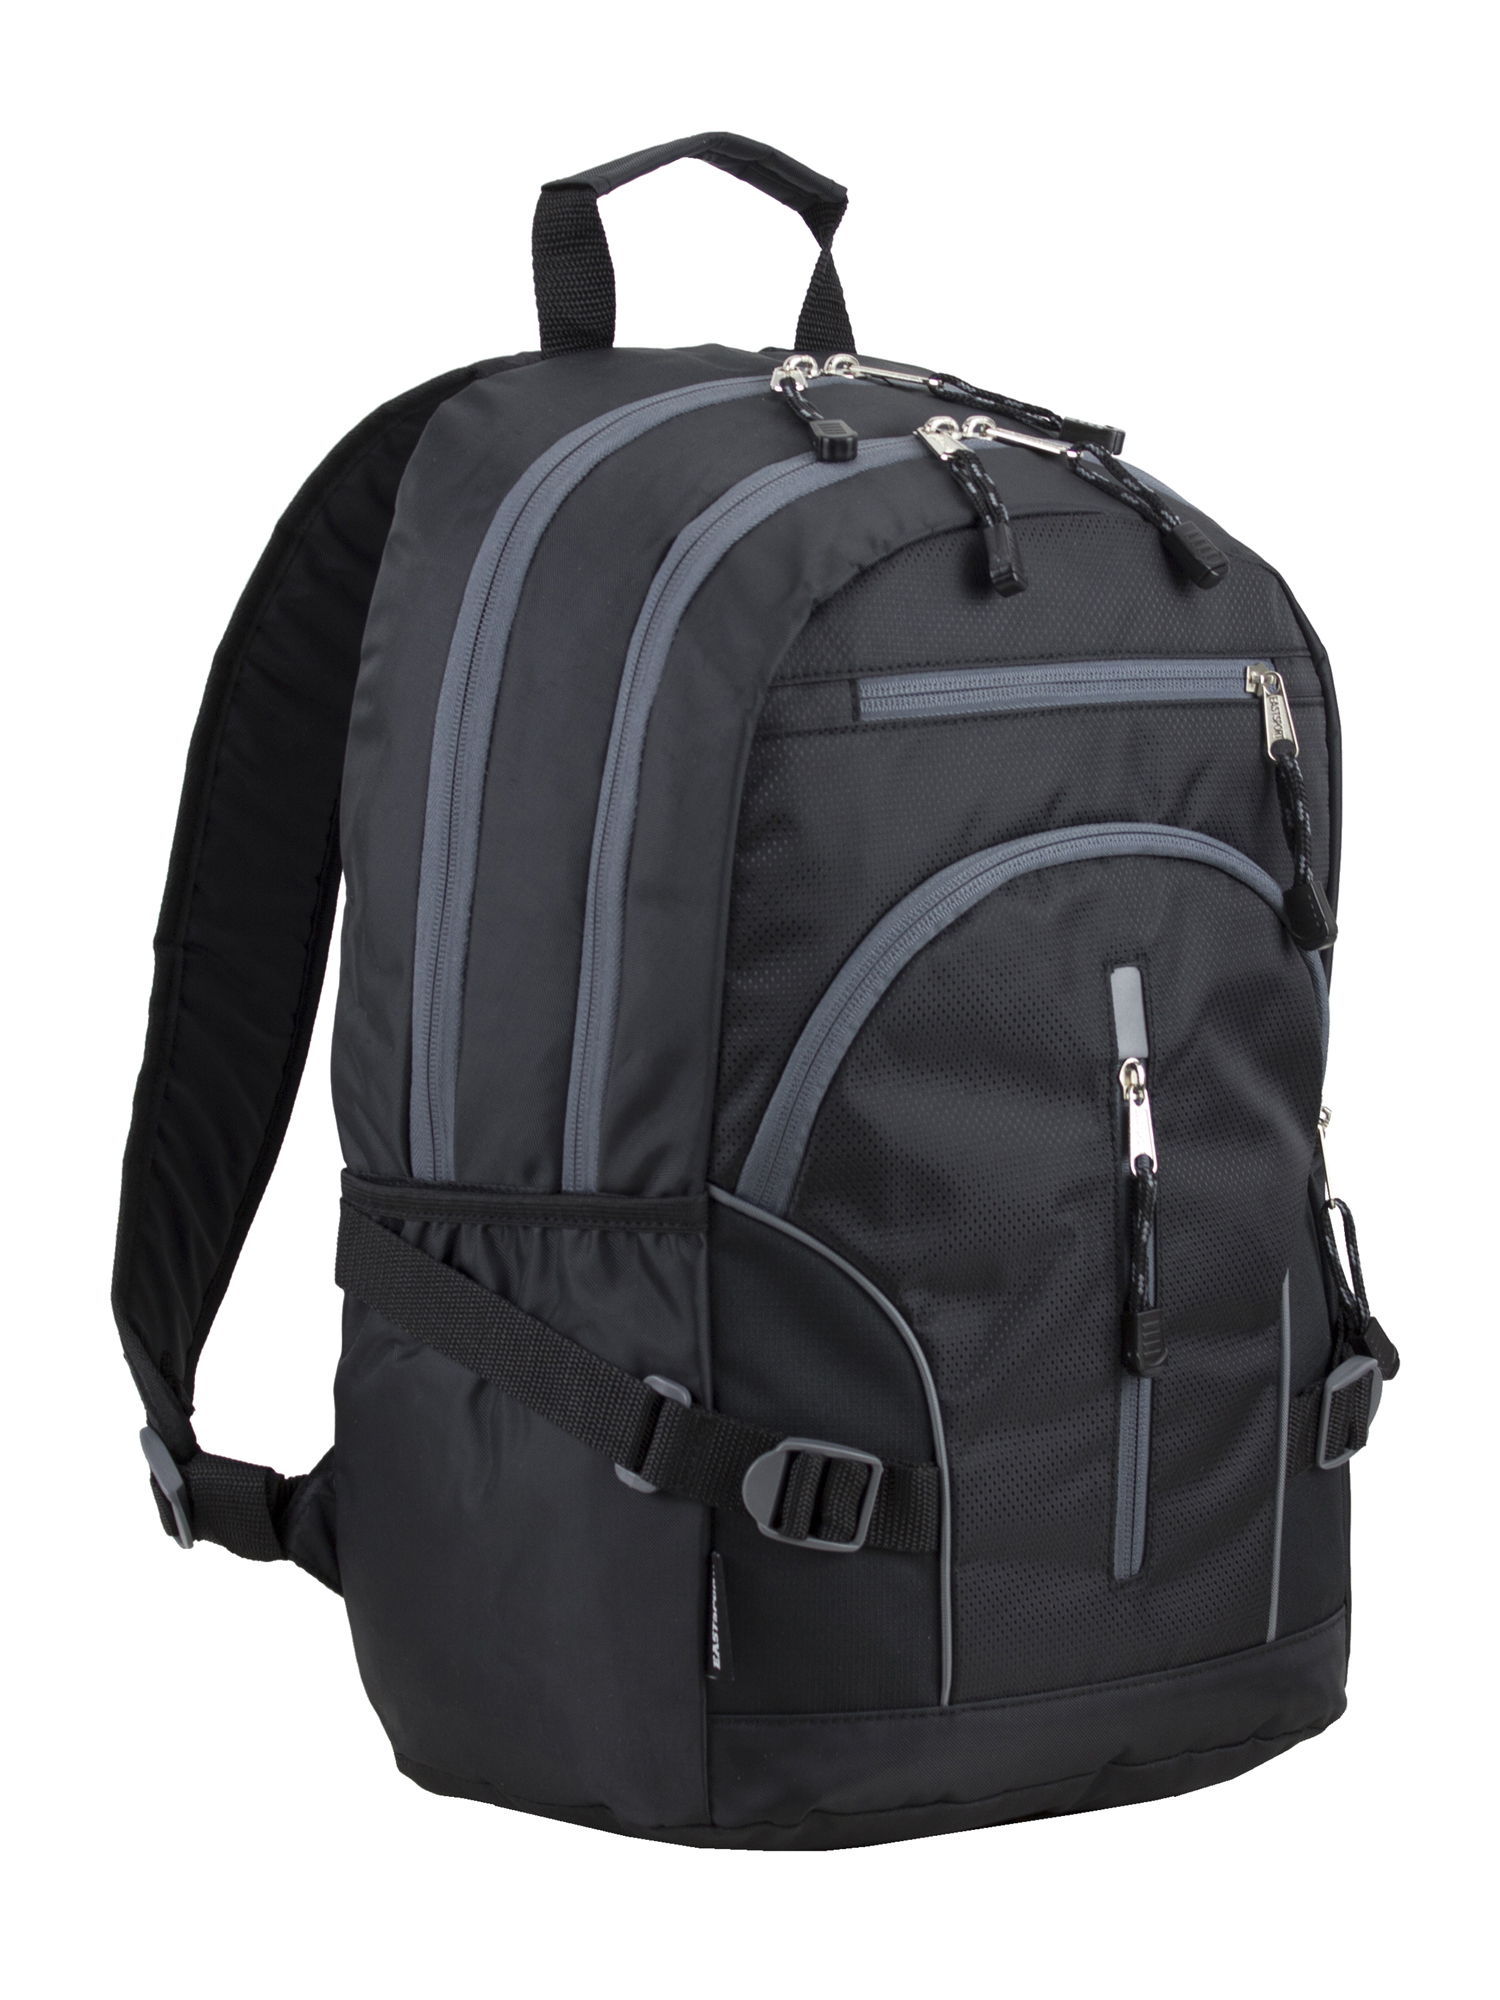 school backpacks